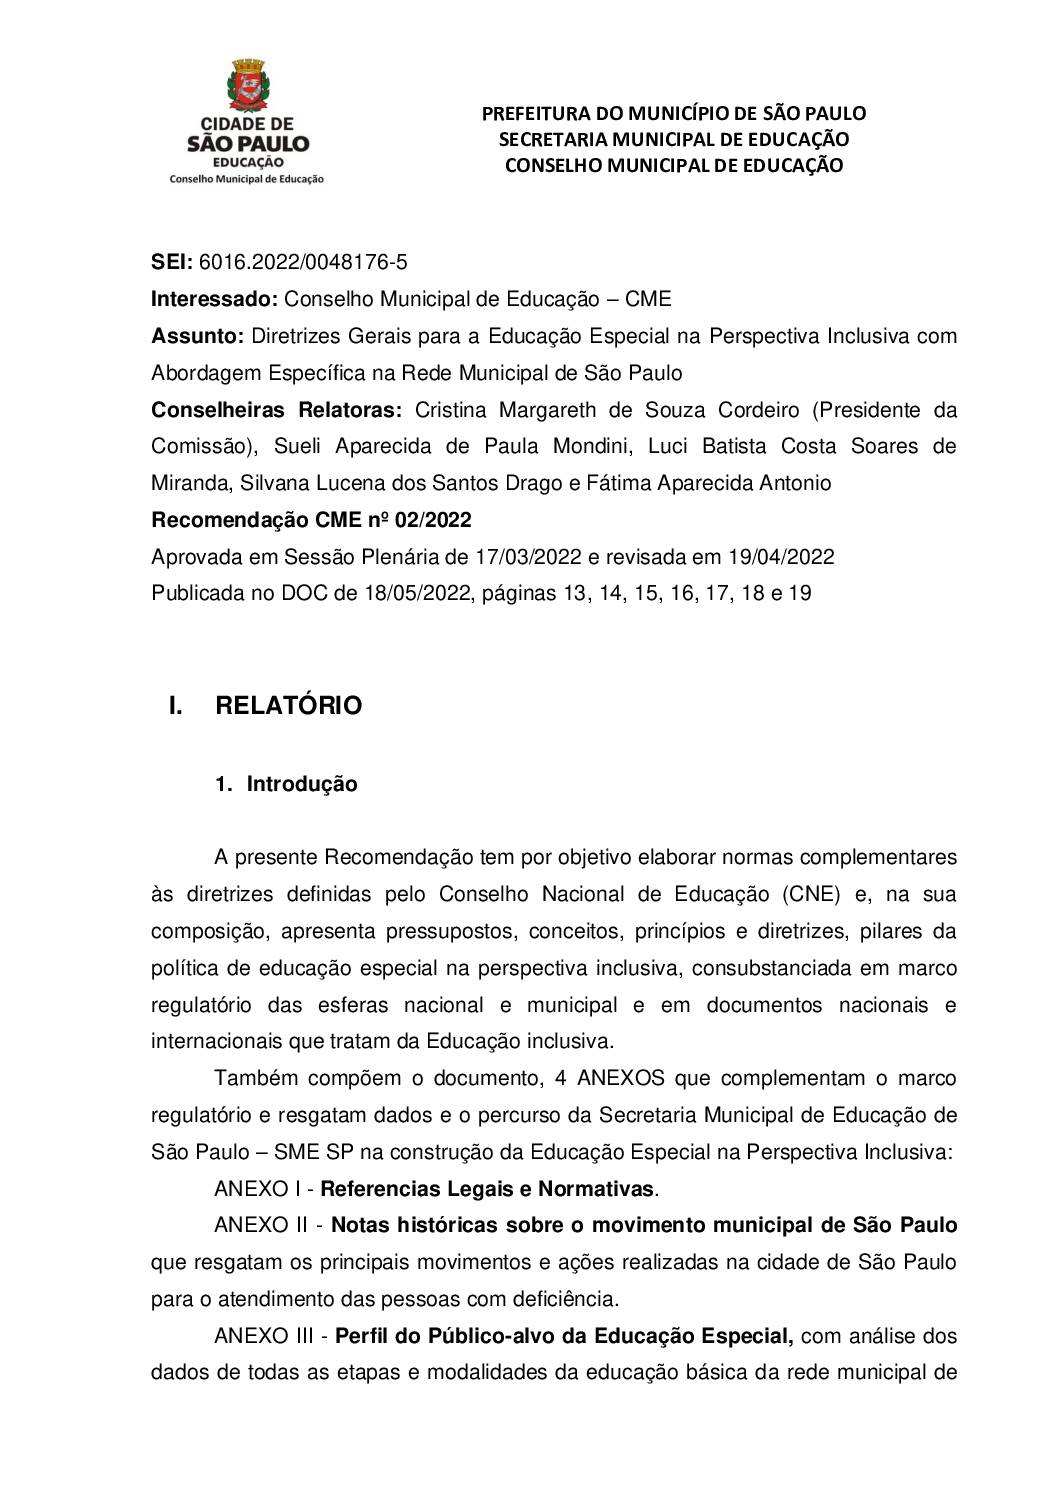 Recomendação CME nº 02/2022 - Diretrizes Gerais para a Educação Especial na Perspectiva Inclusiva com Abordagem Específica na Rede Municipal de São Paulo